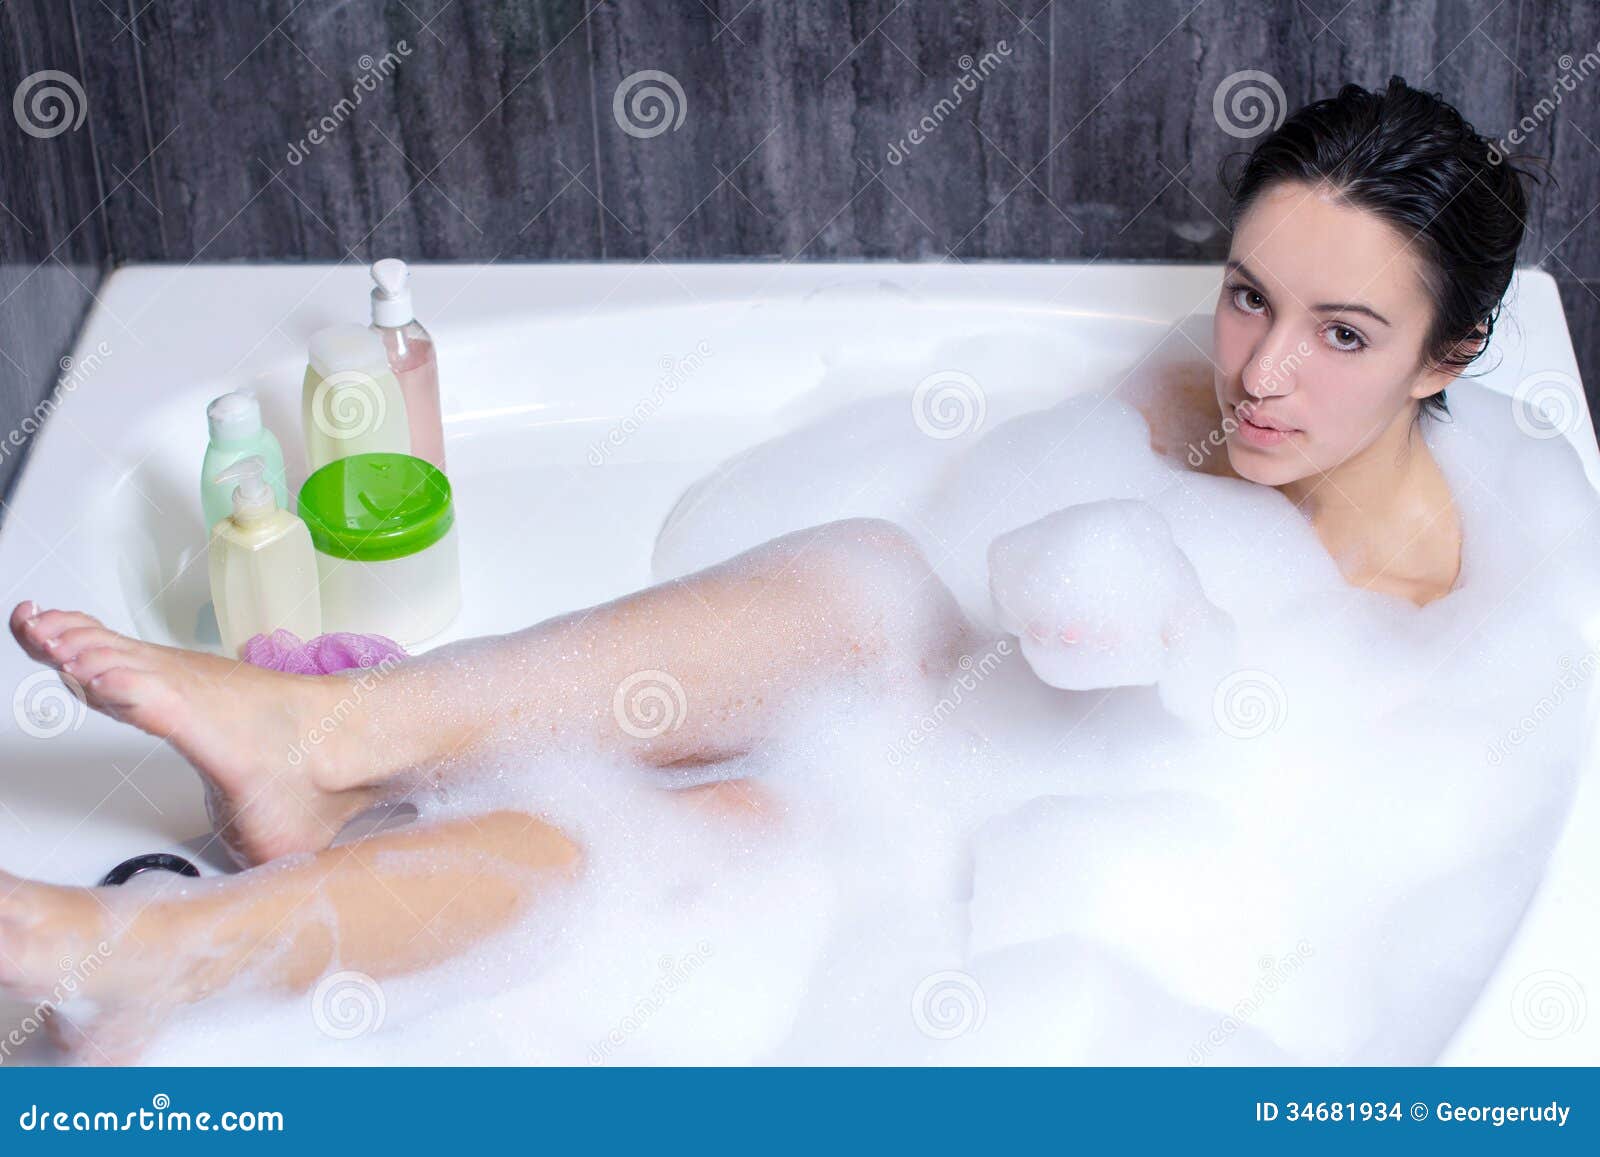 Молодая девушка купается в ванной (8 фото)